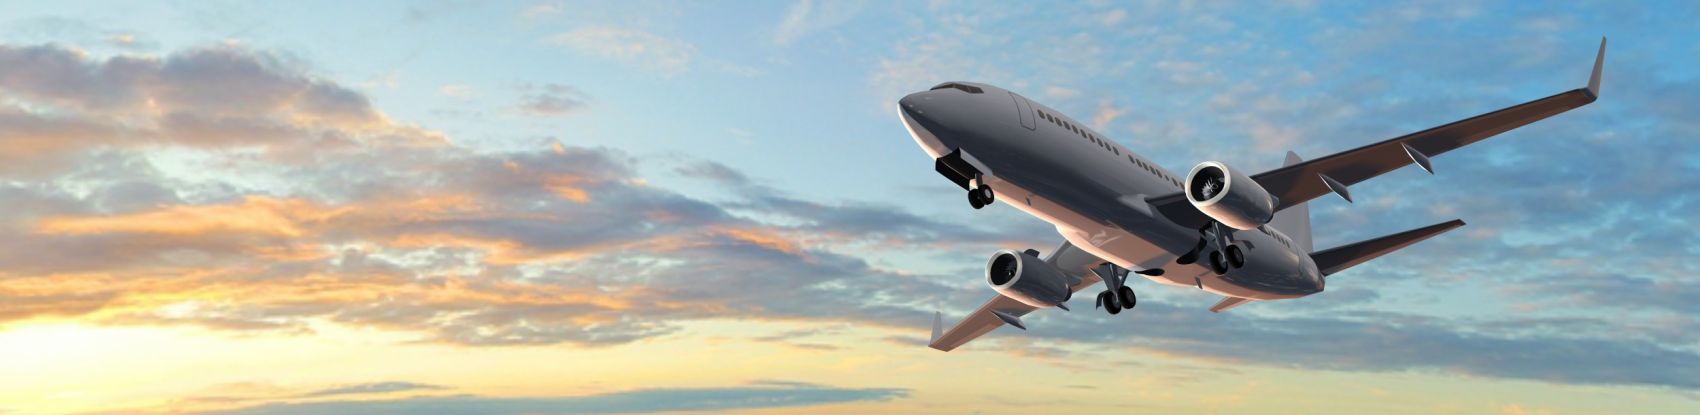 Letar du billigast flyg? Vi undersöker prisjämförelse-tjänster för flyg!